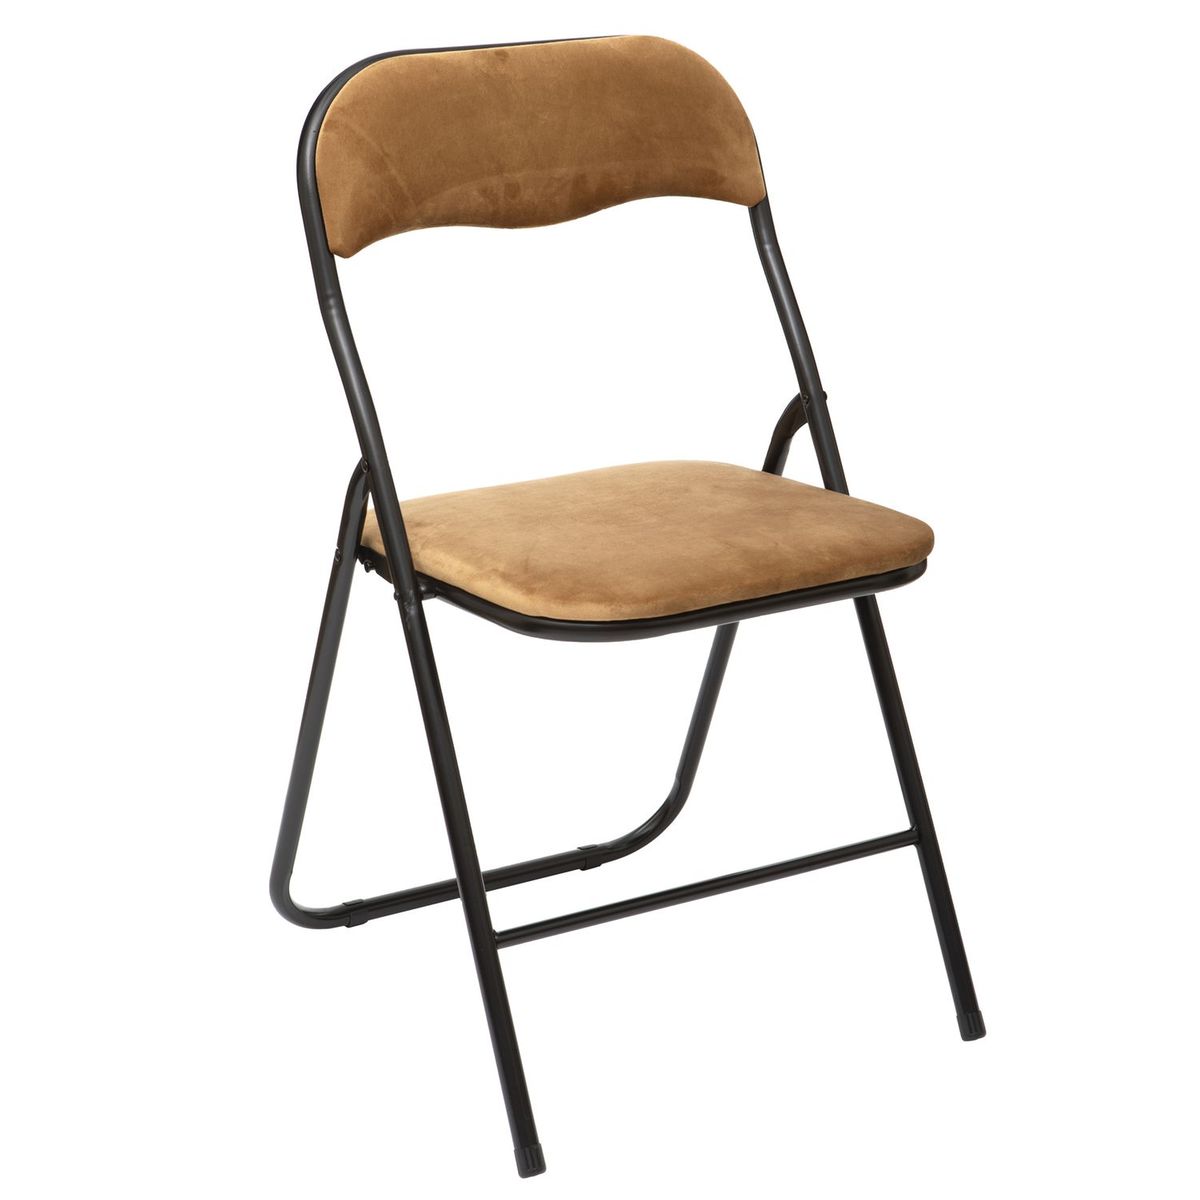 Chaise pliante italienne en bois et métal – Jolie